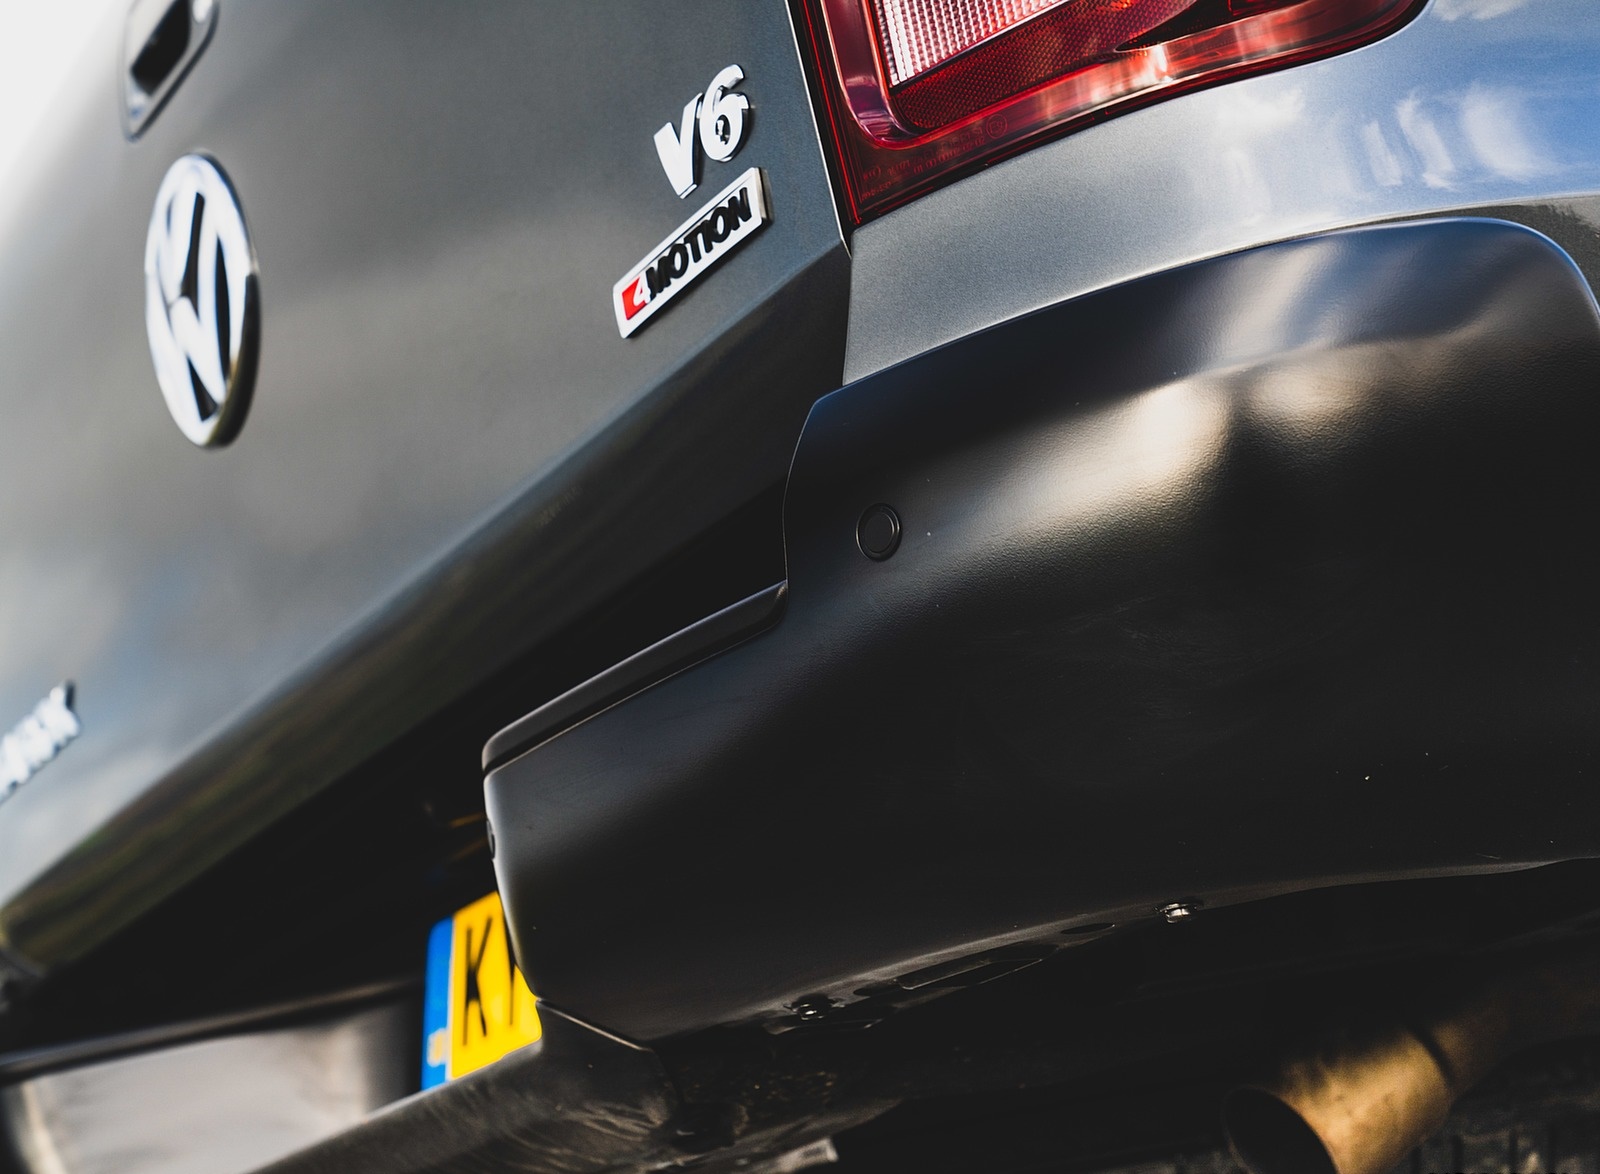 2019 Volkswagen Amarok Black Edition (UK-Spec) Detail Wallpapers #34 of 40